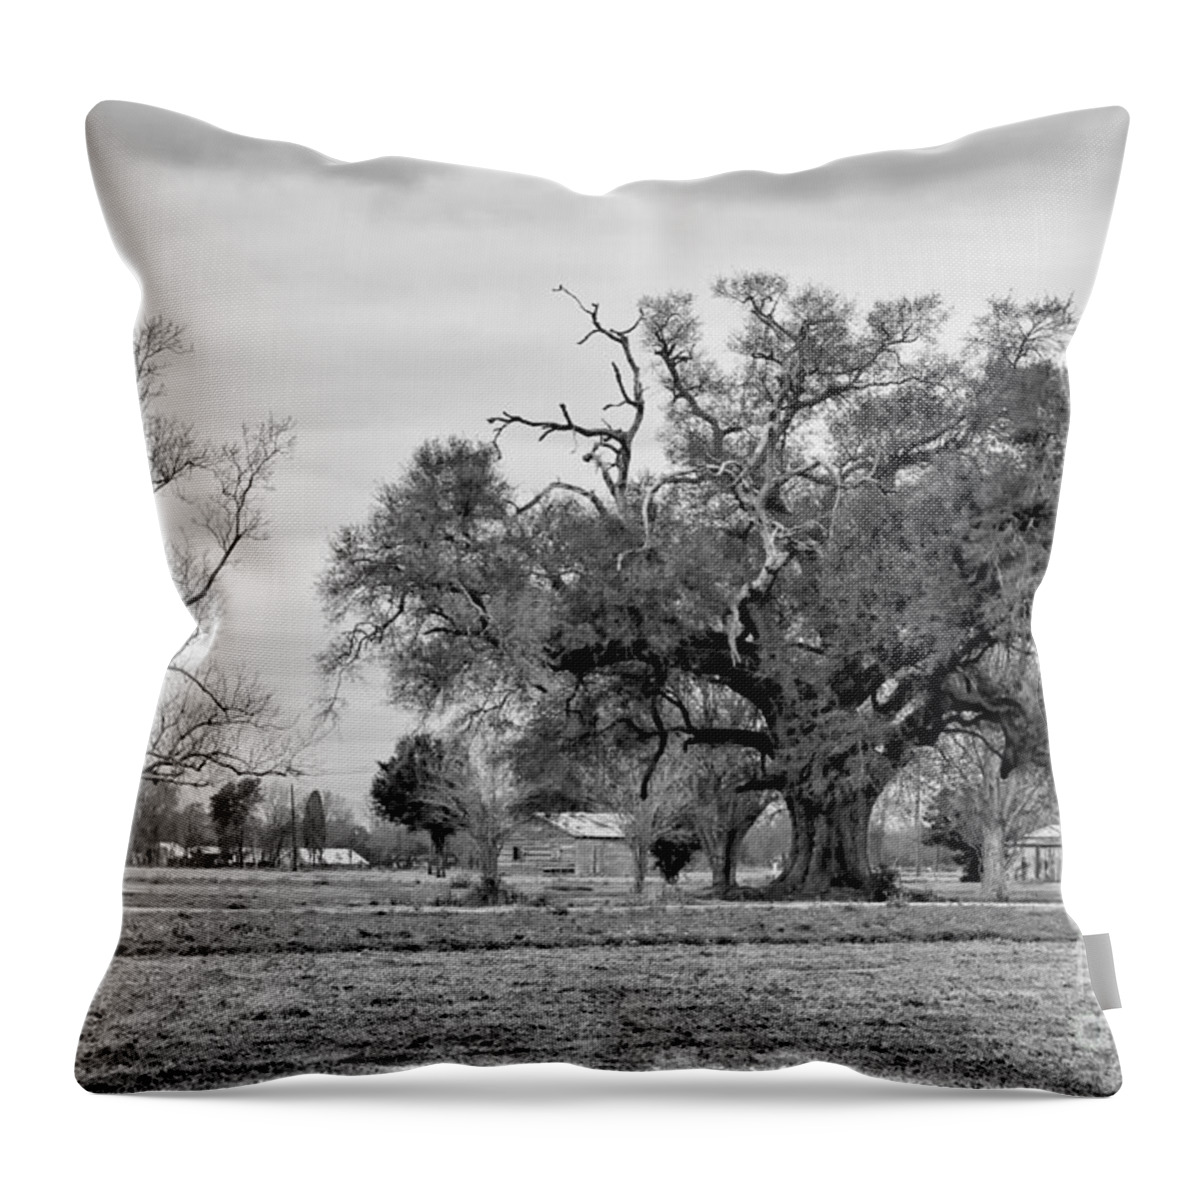  Oak Throw Pillow featuring the photograph Plantation Live Oak -River Road LA by Kathleen K Parker